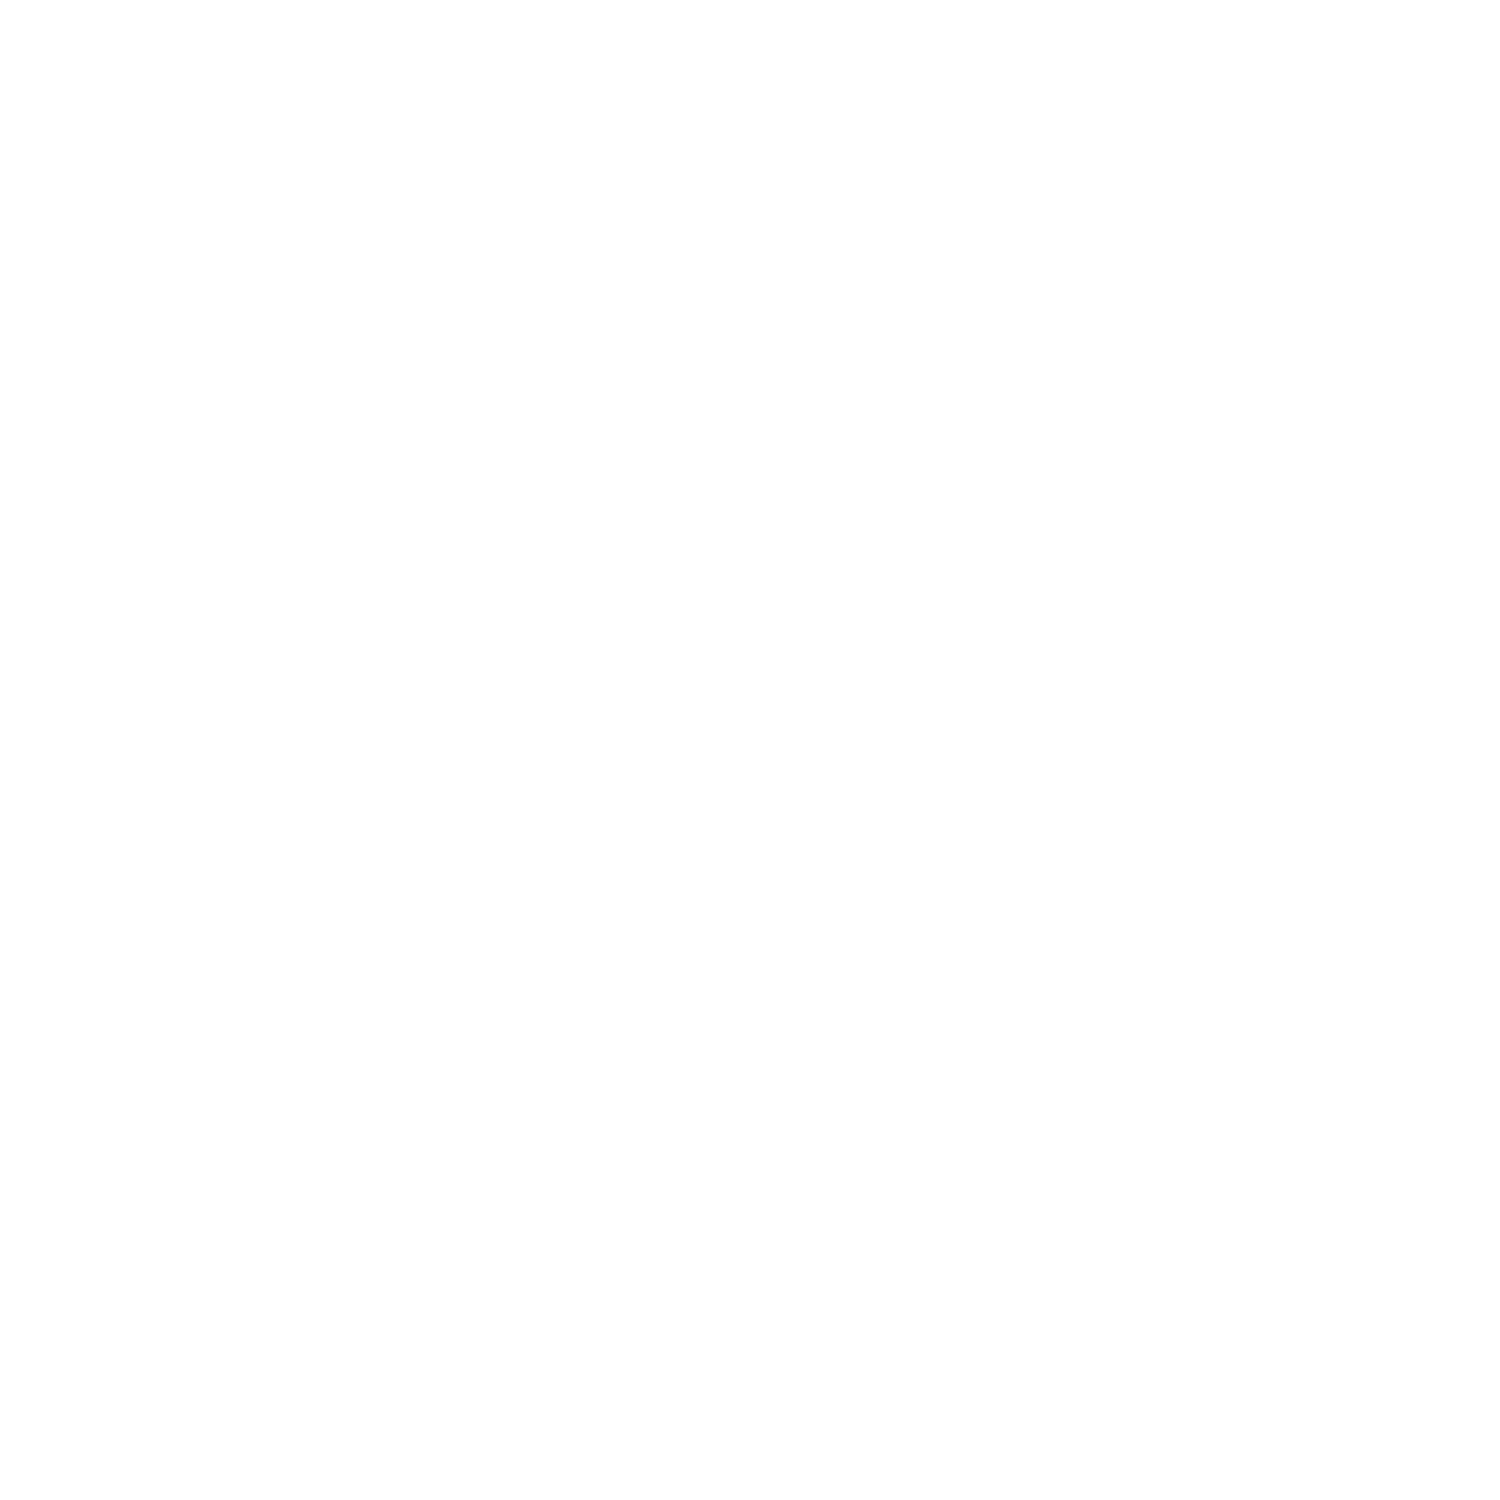 NOVUS Clothing Company